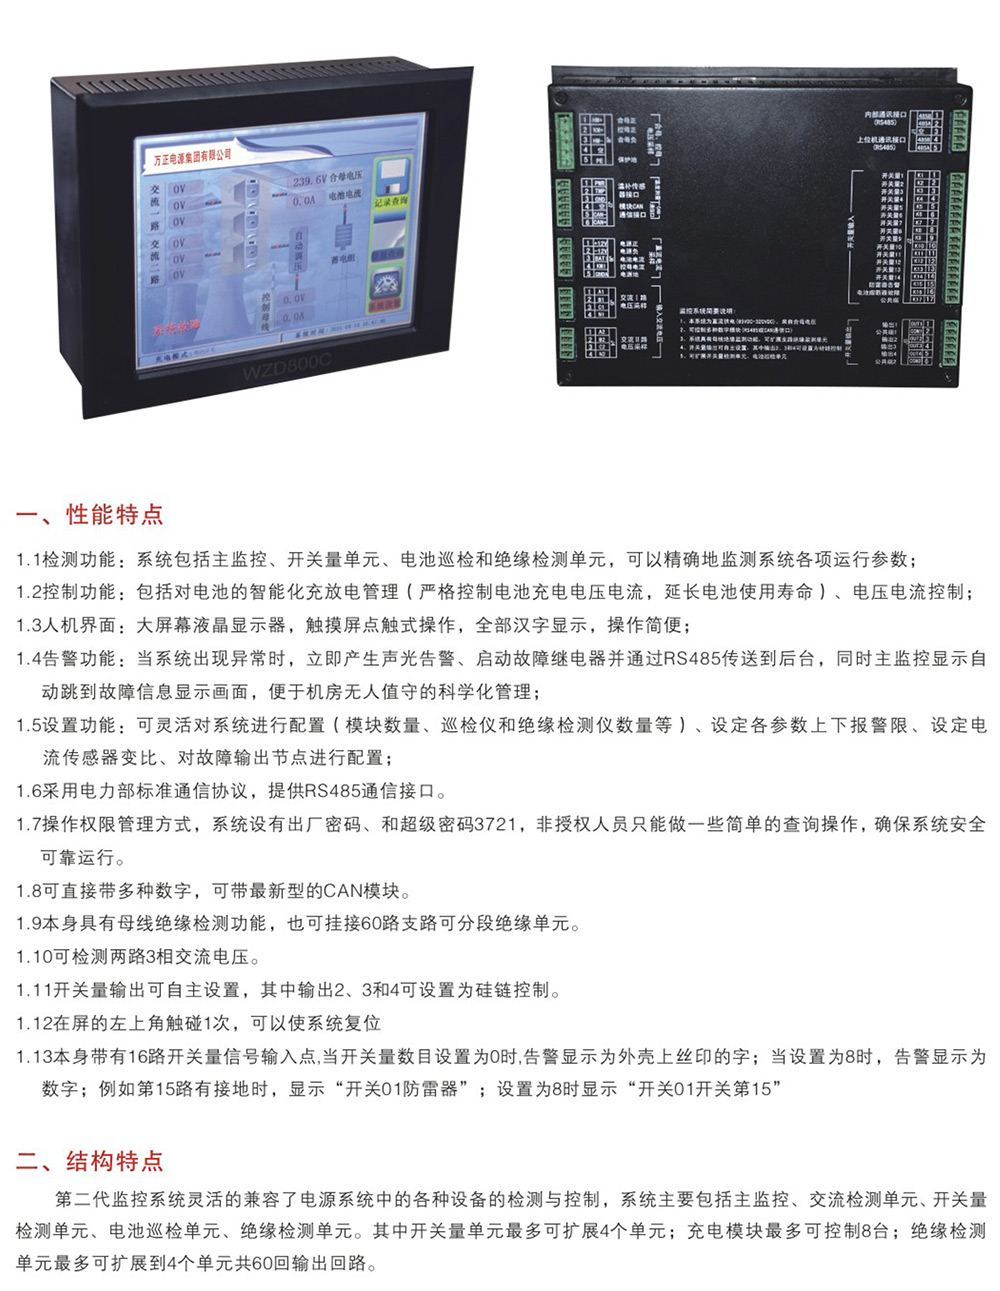 WZD600C-1200C系列微机触摸屏监控系统